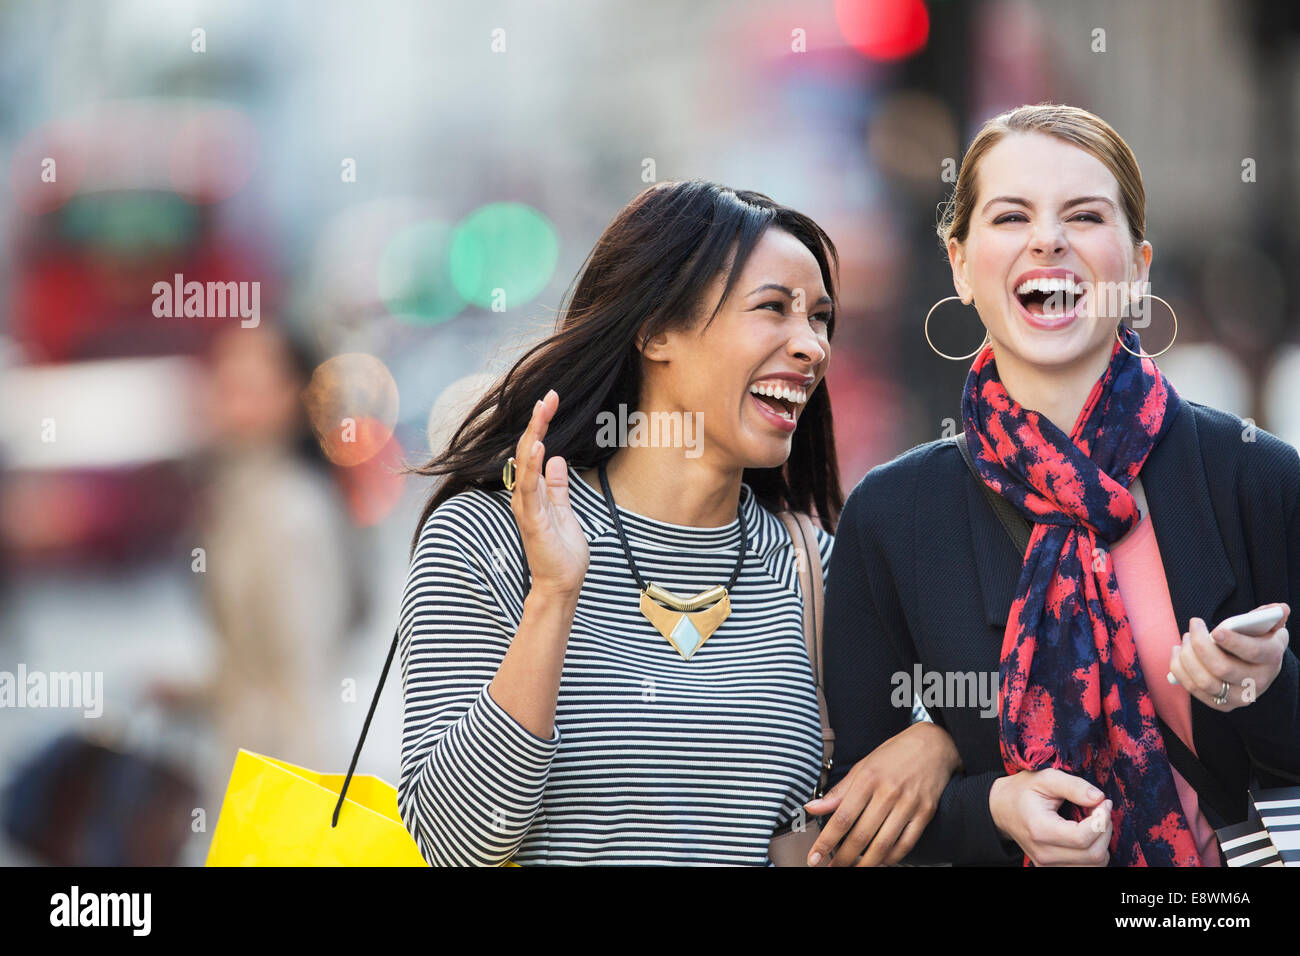 Les femmes rient ensemble walking down city street Banque D'Images